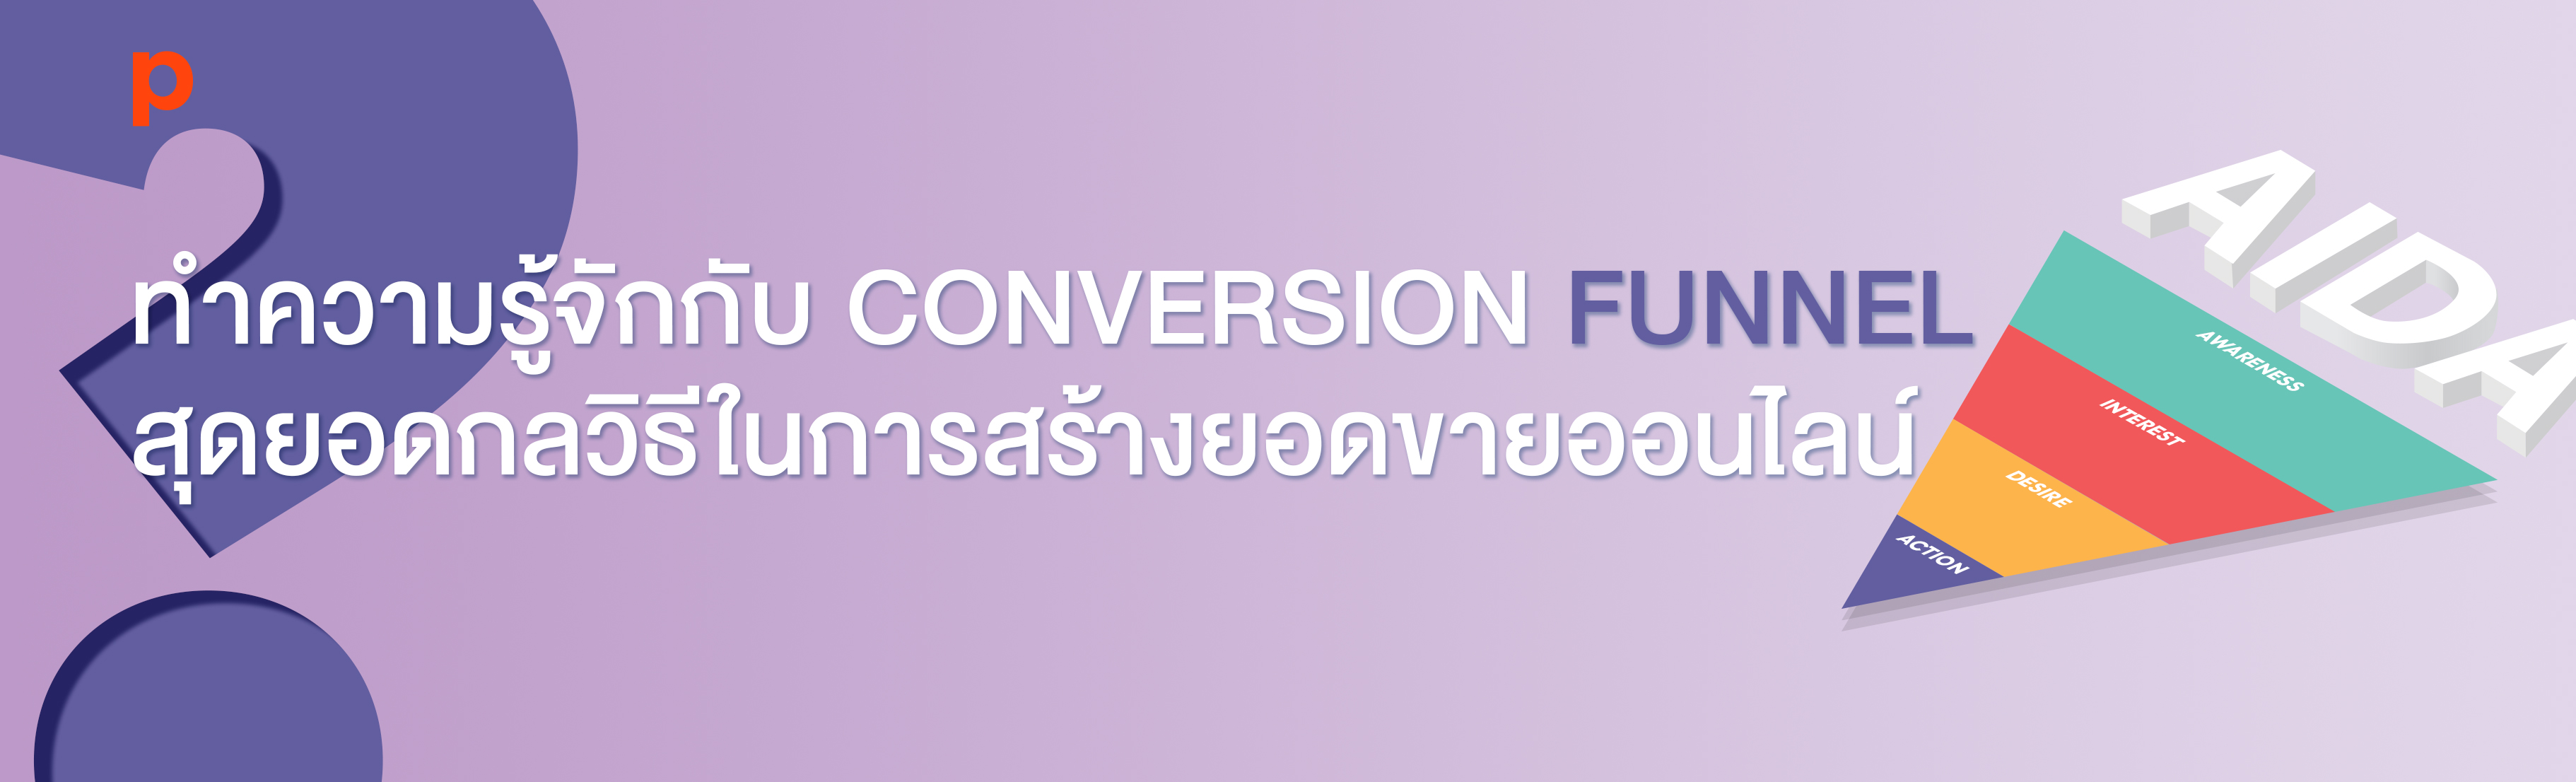 ทำความรู้จักกับ Conversion Funnel สุดยอดกลวิธีในการสร้างยอดขายออนไลน์